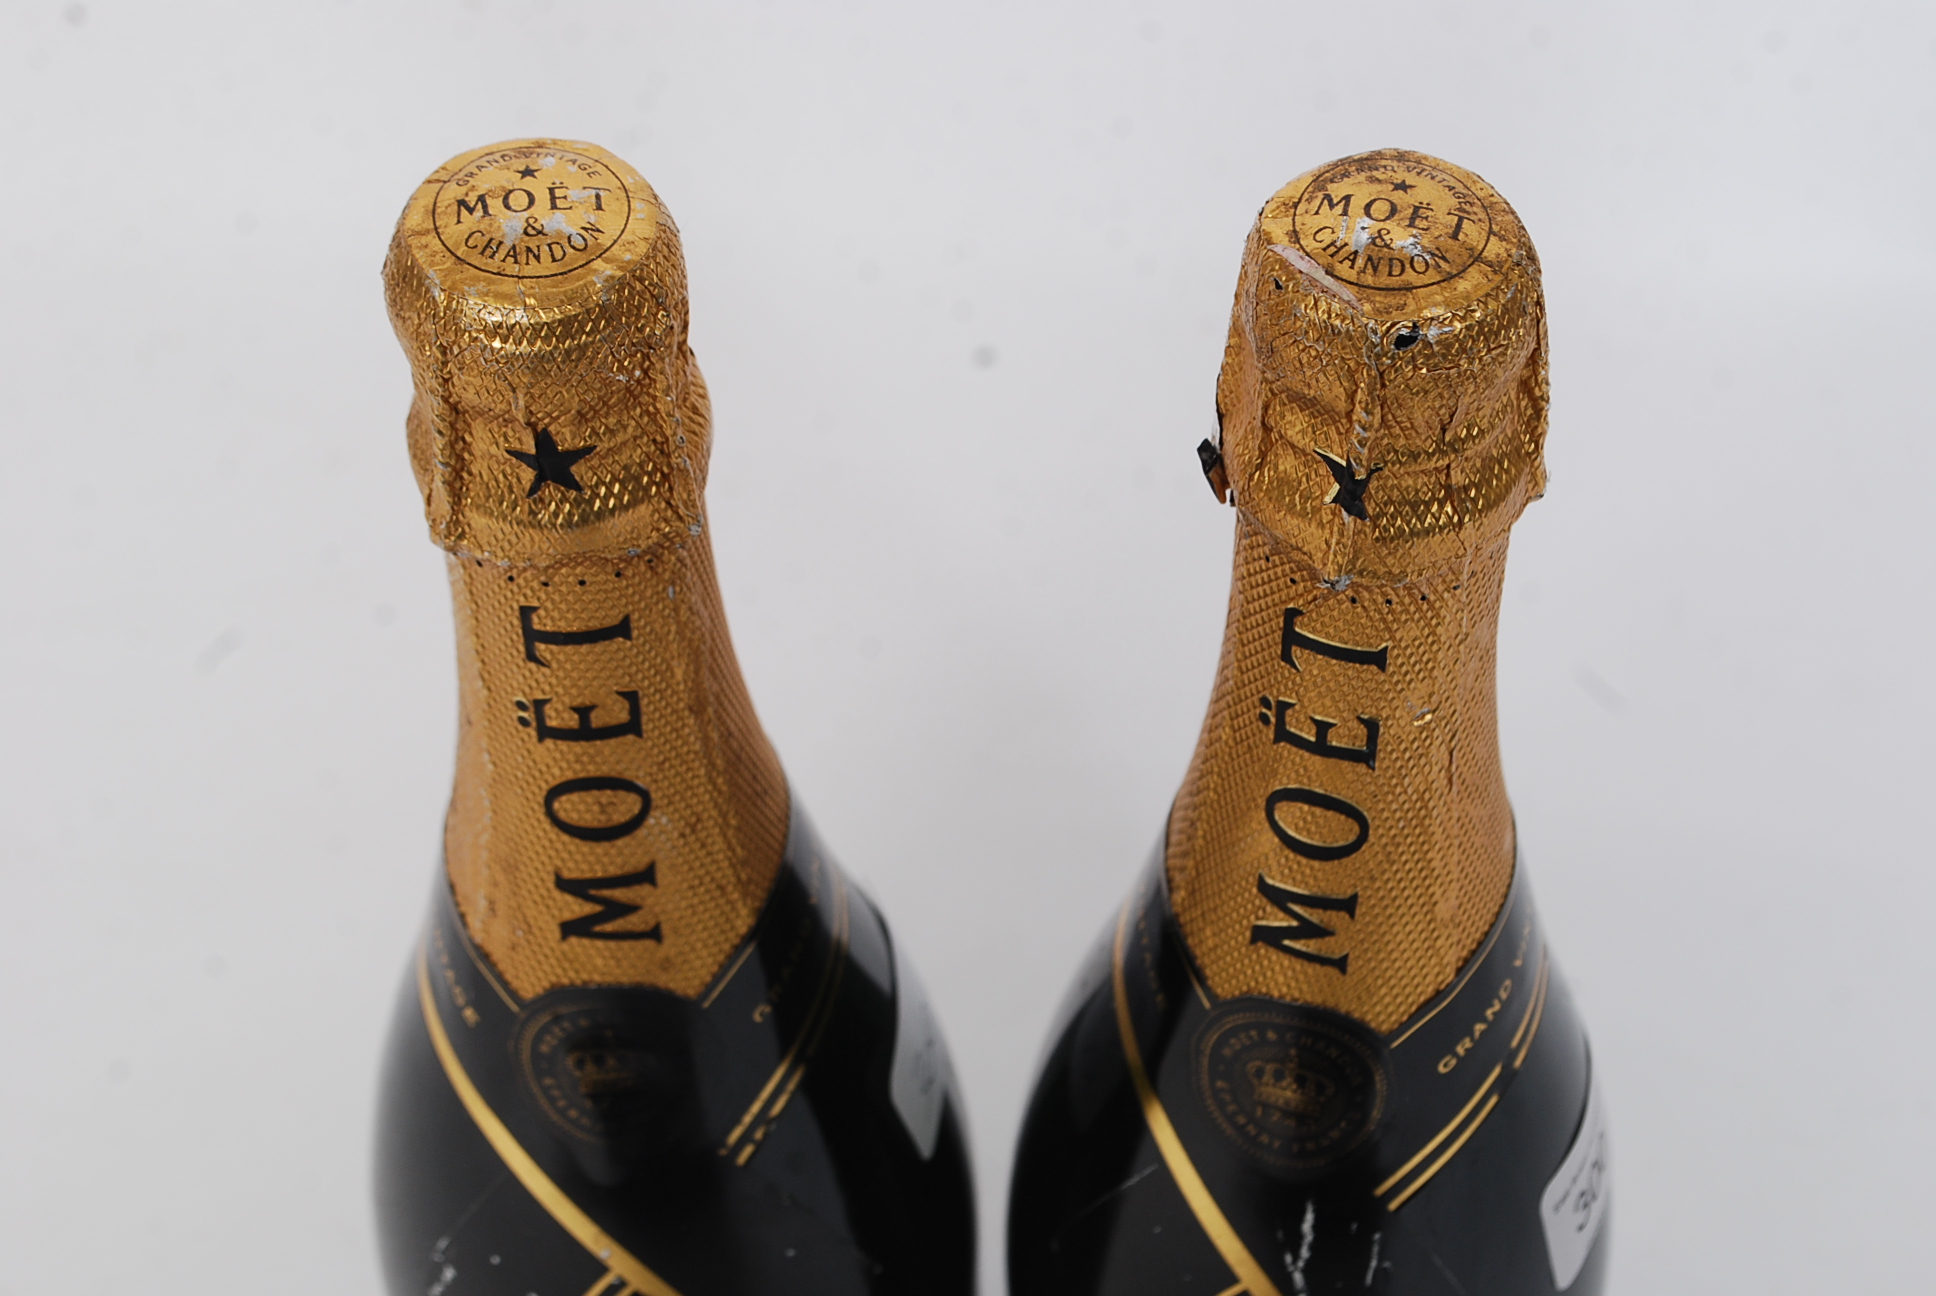 2 vintage Moet & Chadon bottles of champagne 2000 ( see illustrations ) - Image 2 of 3